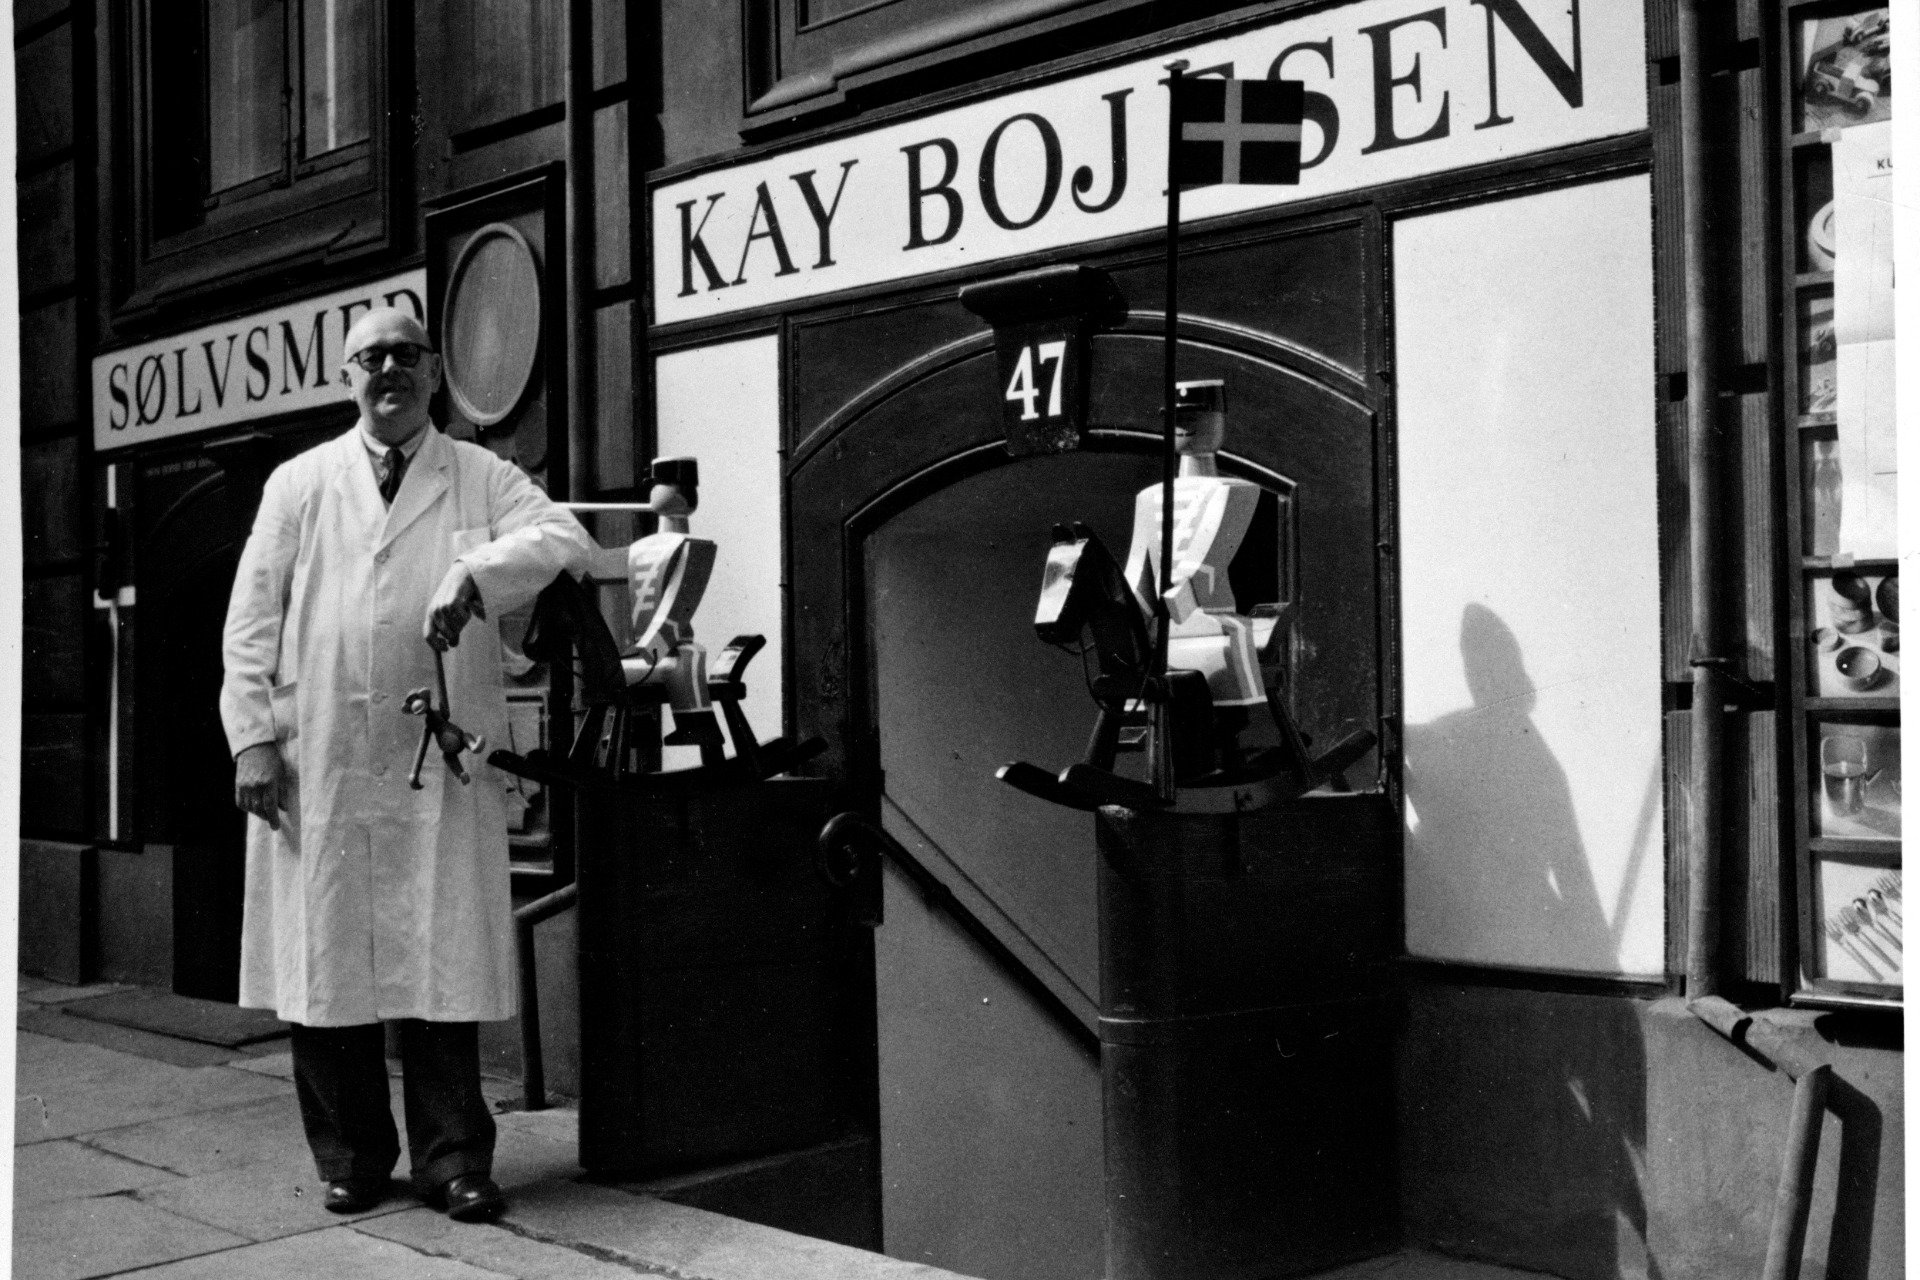 Kay Bojesen foran kjellerbutikken og verkstedet hans i Bredgade 47, rett ved det danske slottet Amalienborg